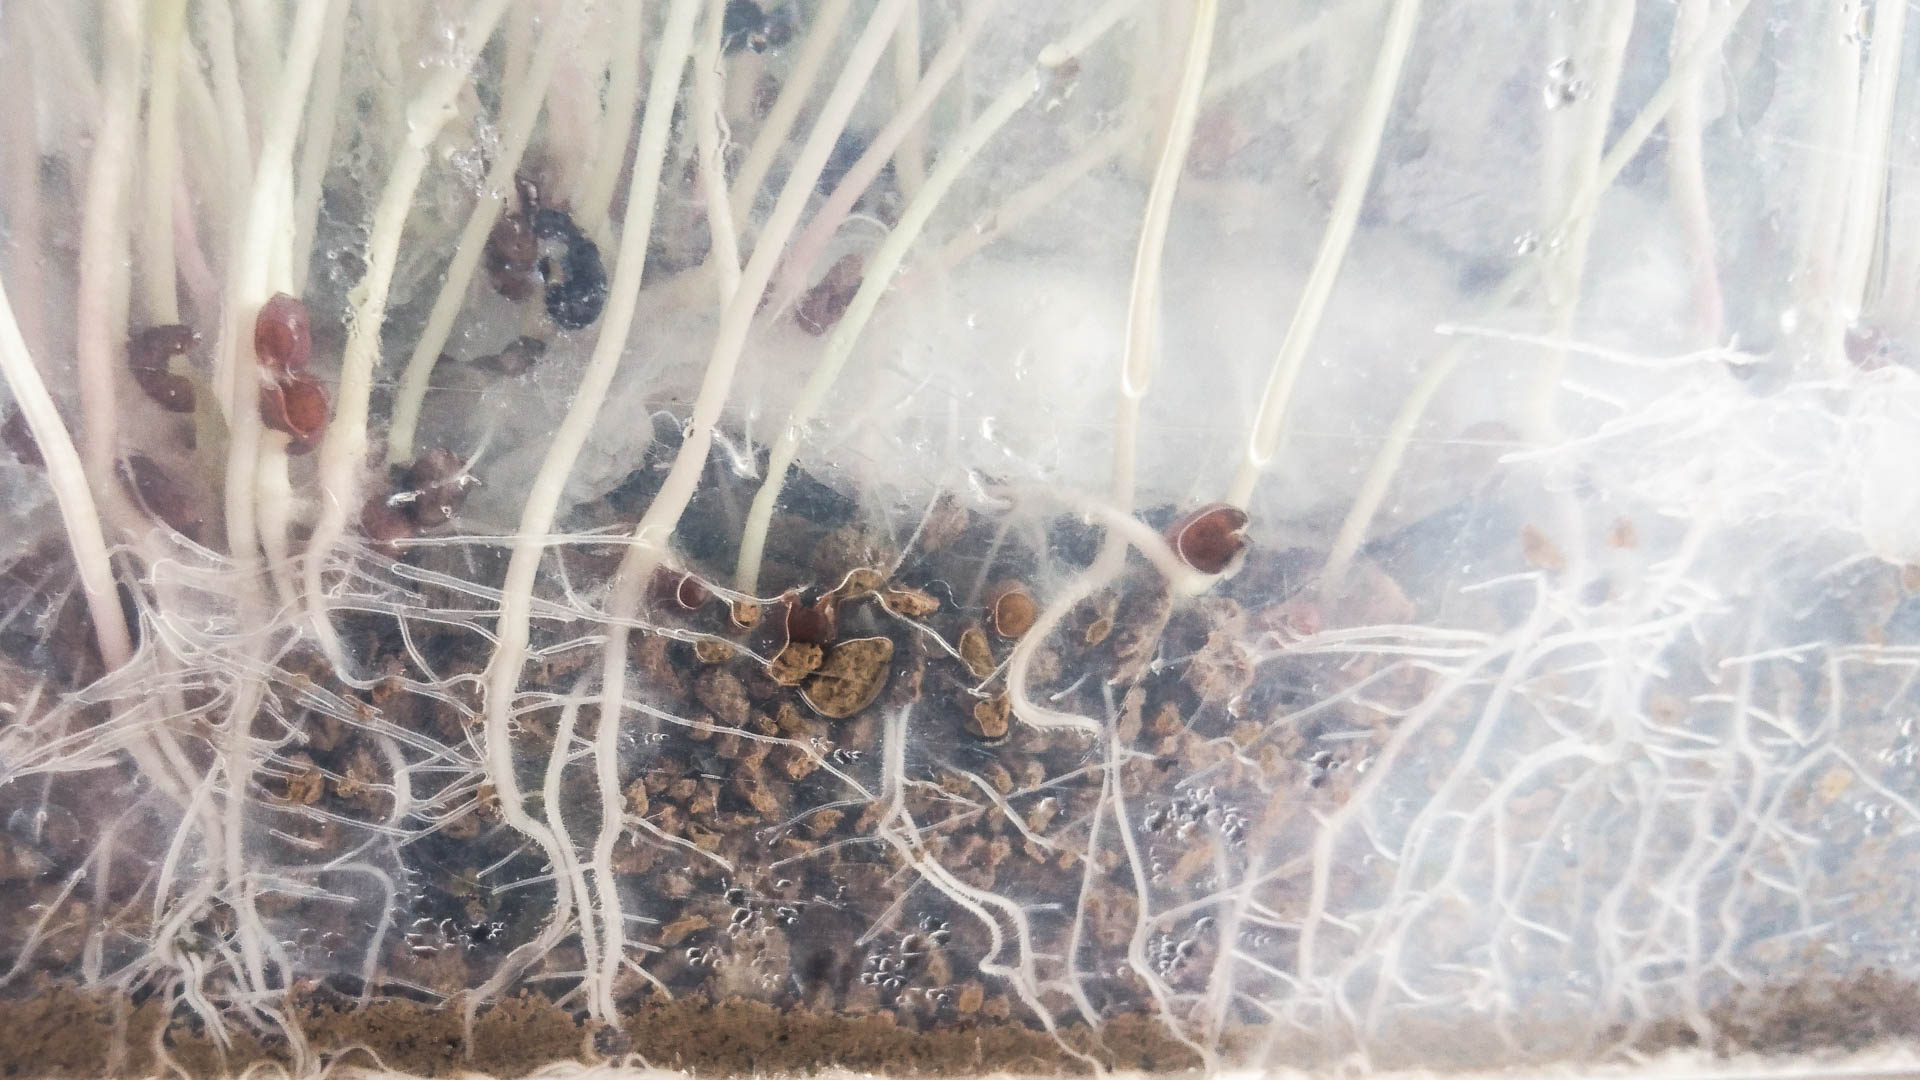 Zeolite Chabasite granulare 3-6 mm - Zeocoltura